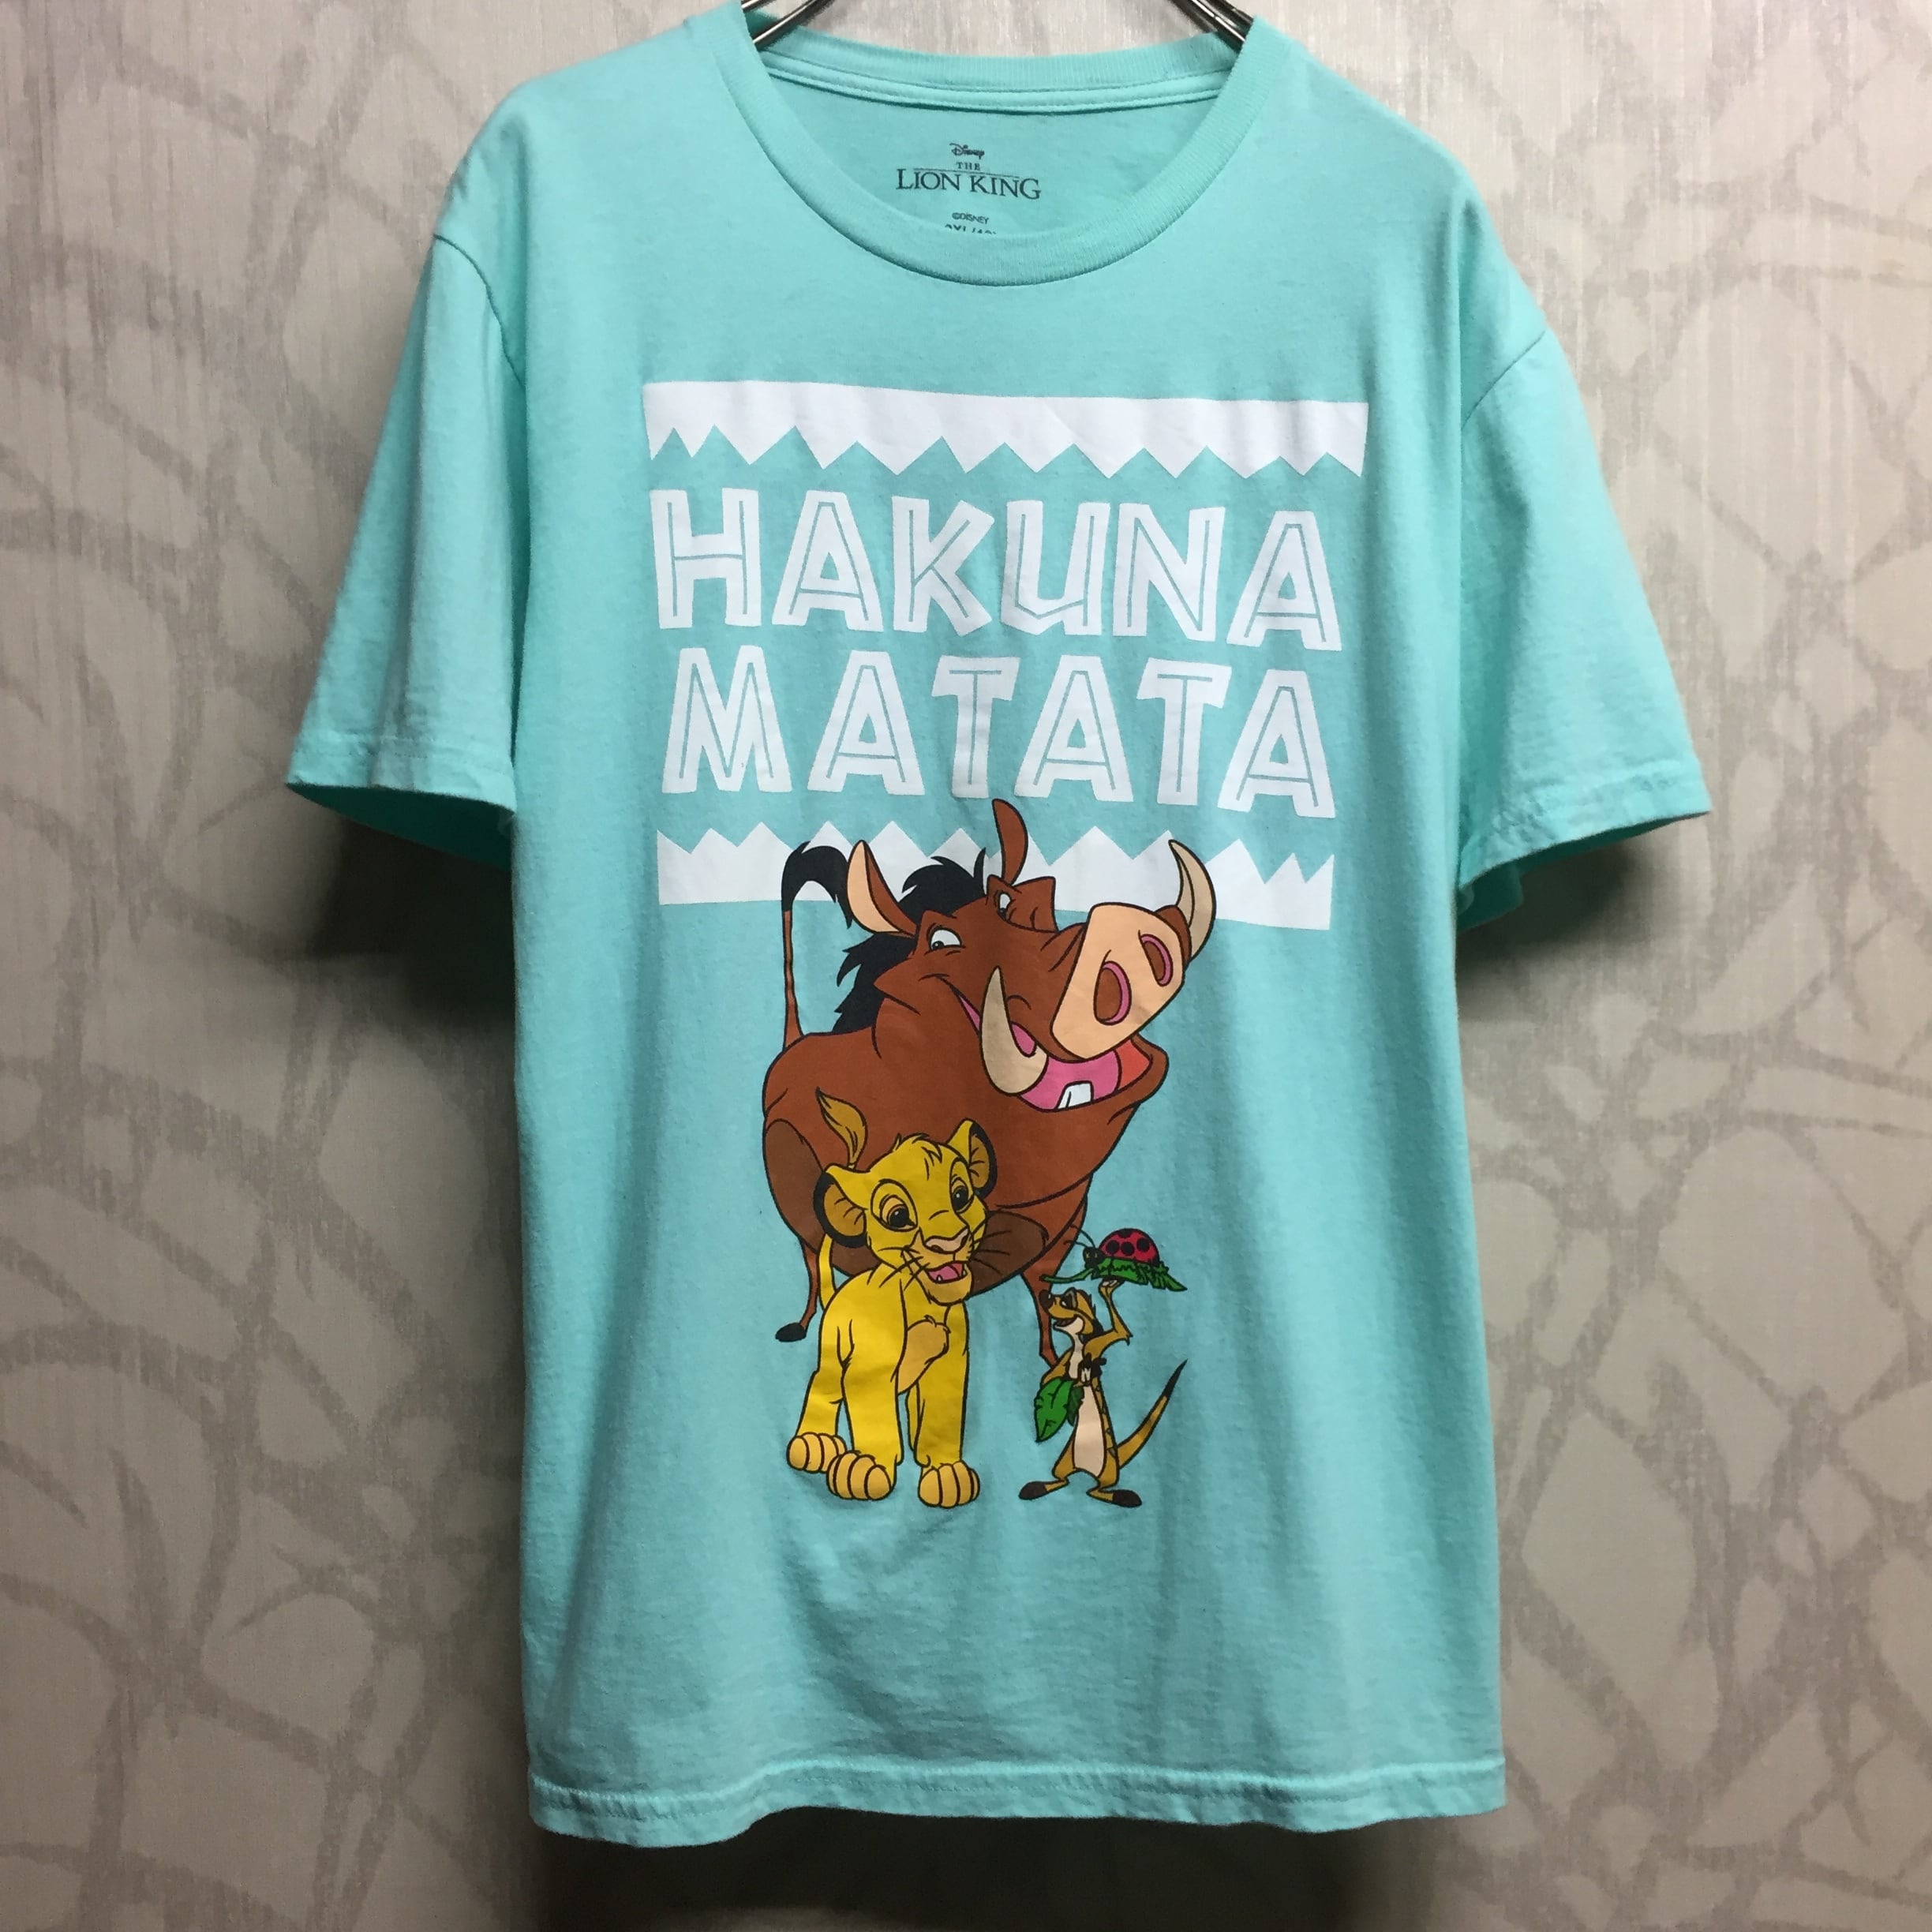 ディズニー Tシャツ ライオンキング ハクナマタタ バックプリント